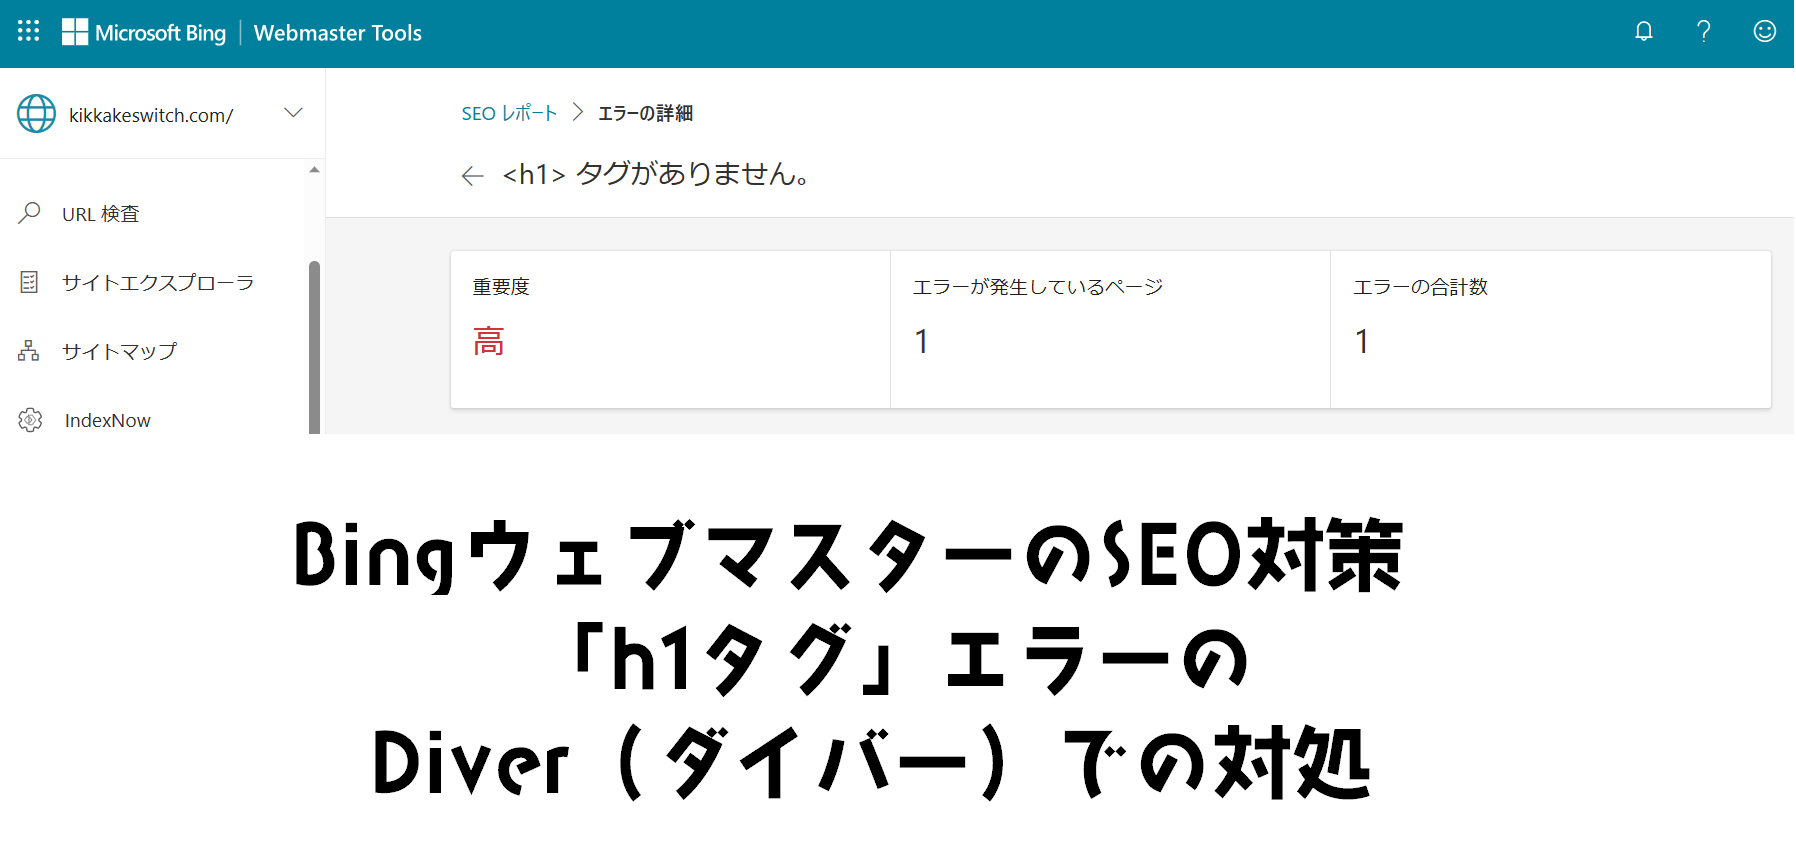 Bingウェブマスターツールで「h1タグがありません。」から学ぶDiverのSEO対策